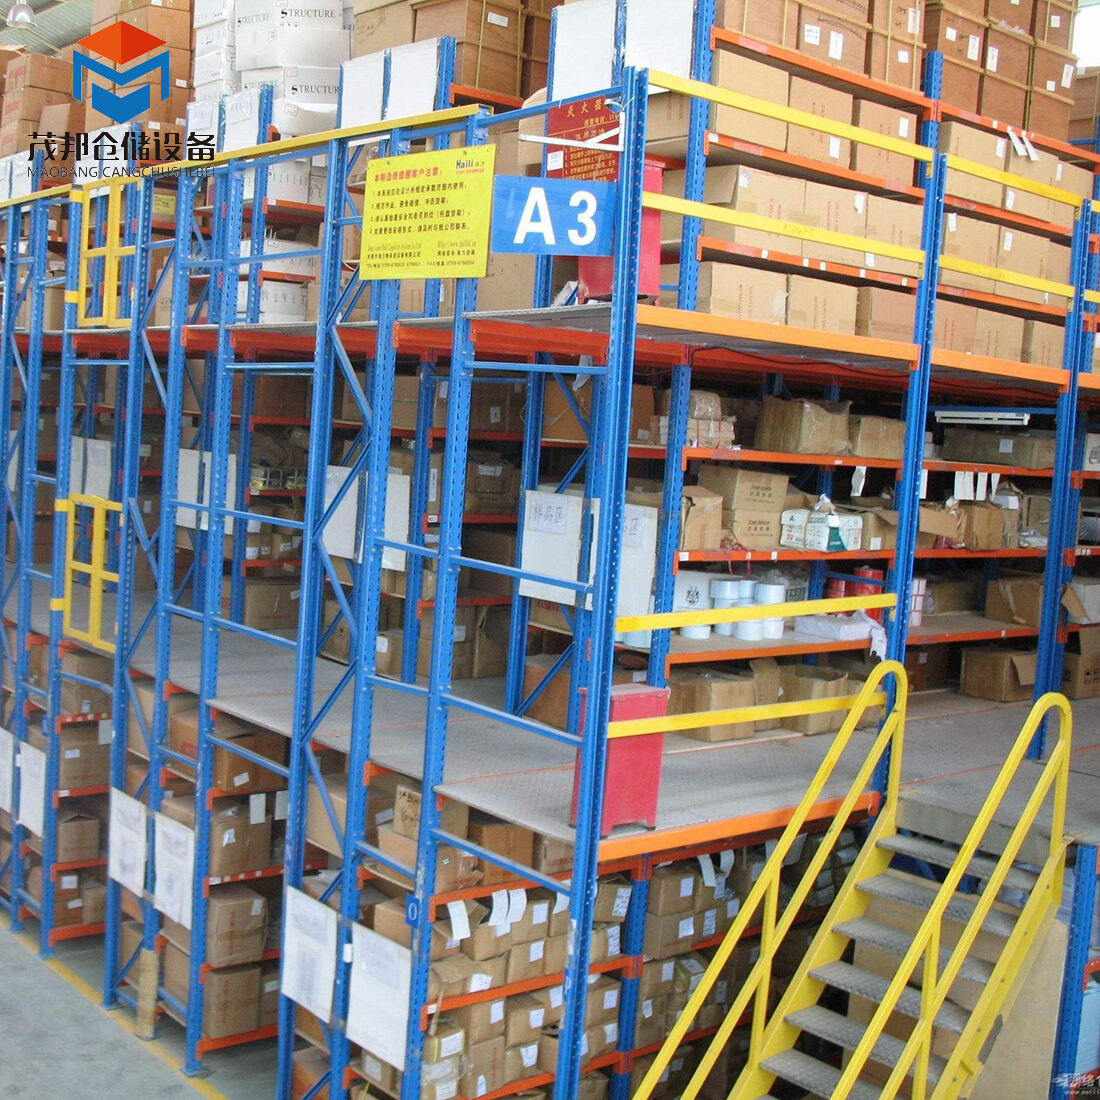 Heavy duty mezzanine steel shelving system warehouse multilevel high load mezzanine racking flooring factory